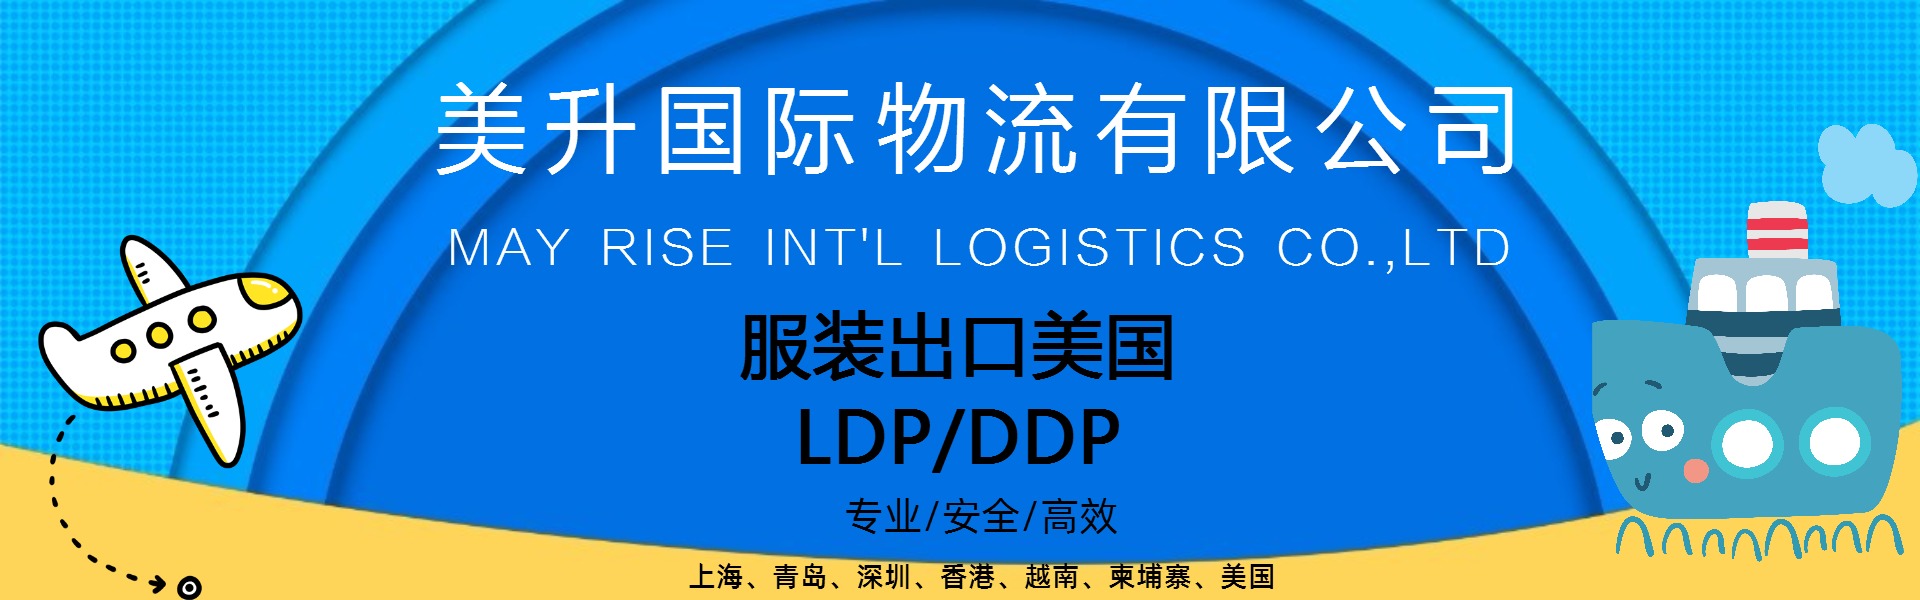 服装订单出口洛杉矶 纽约 LDP DPP条款